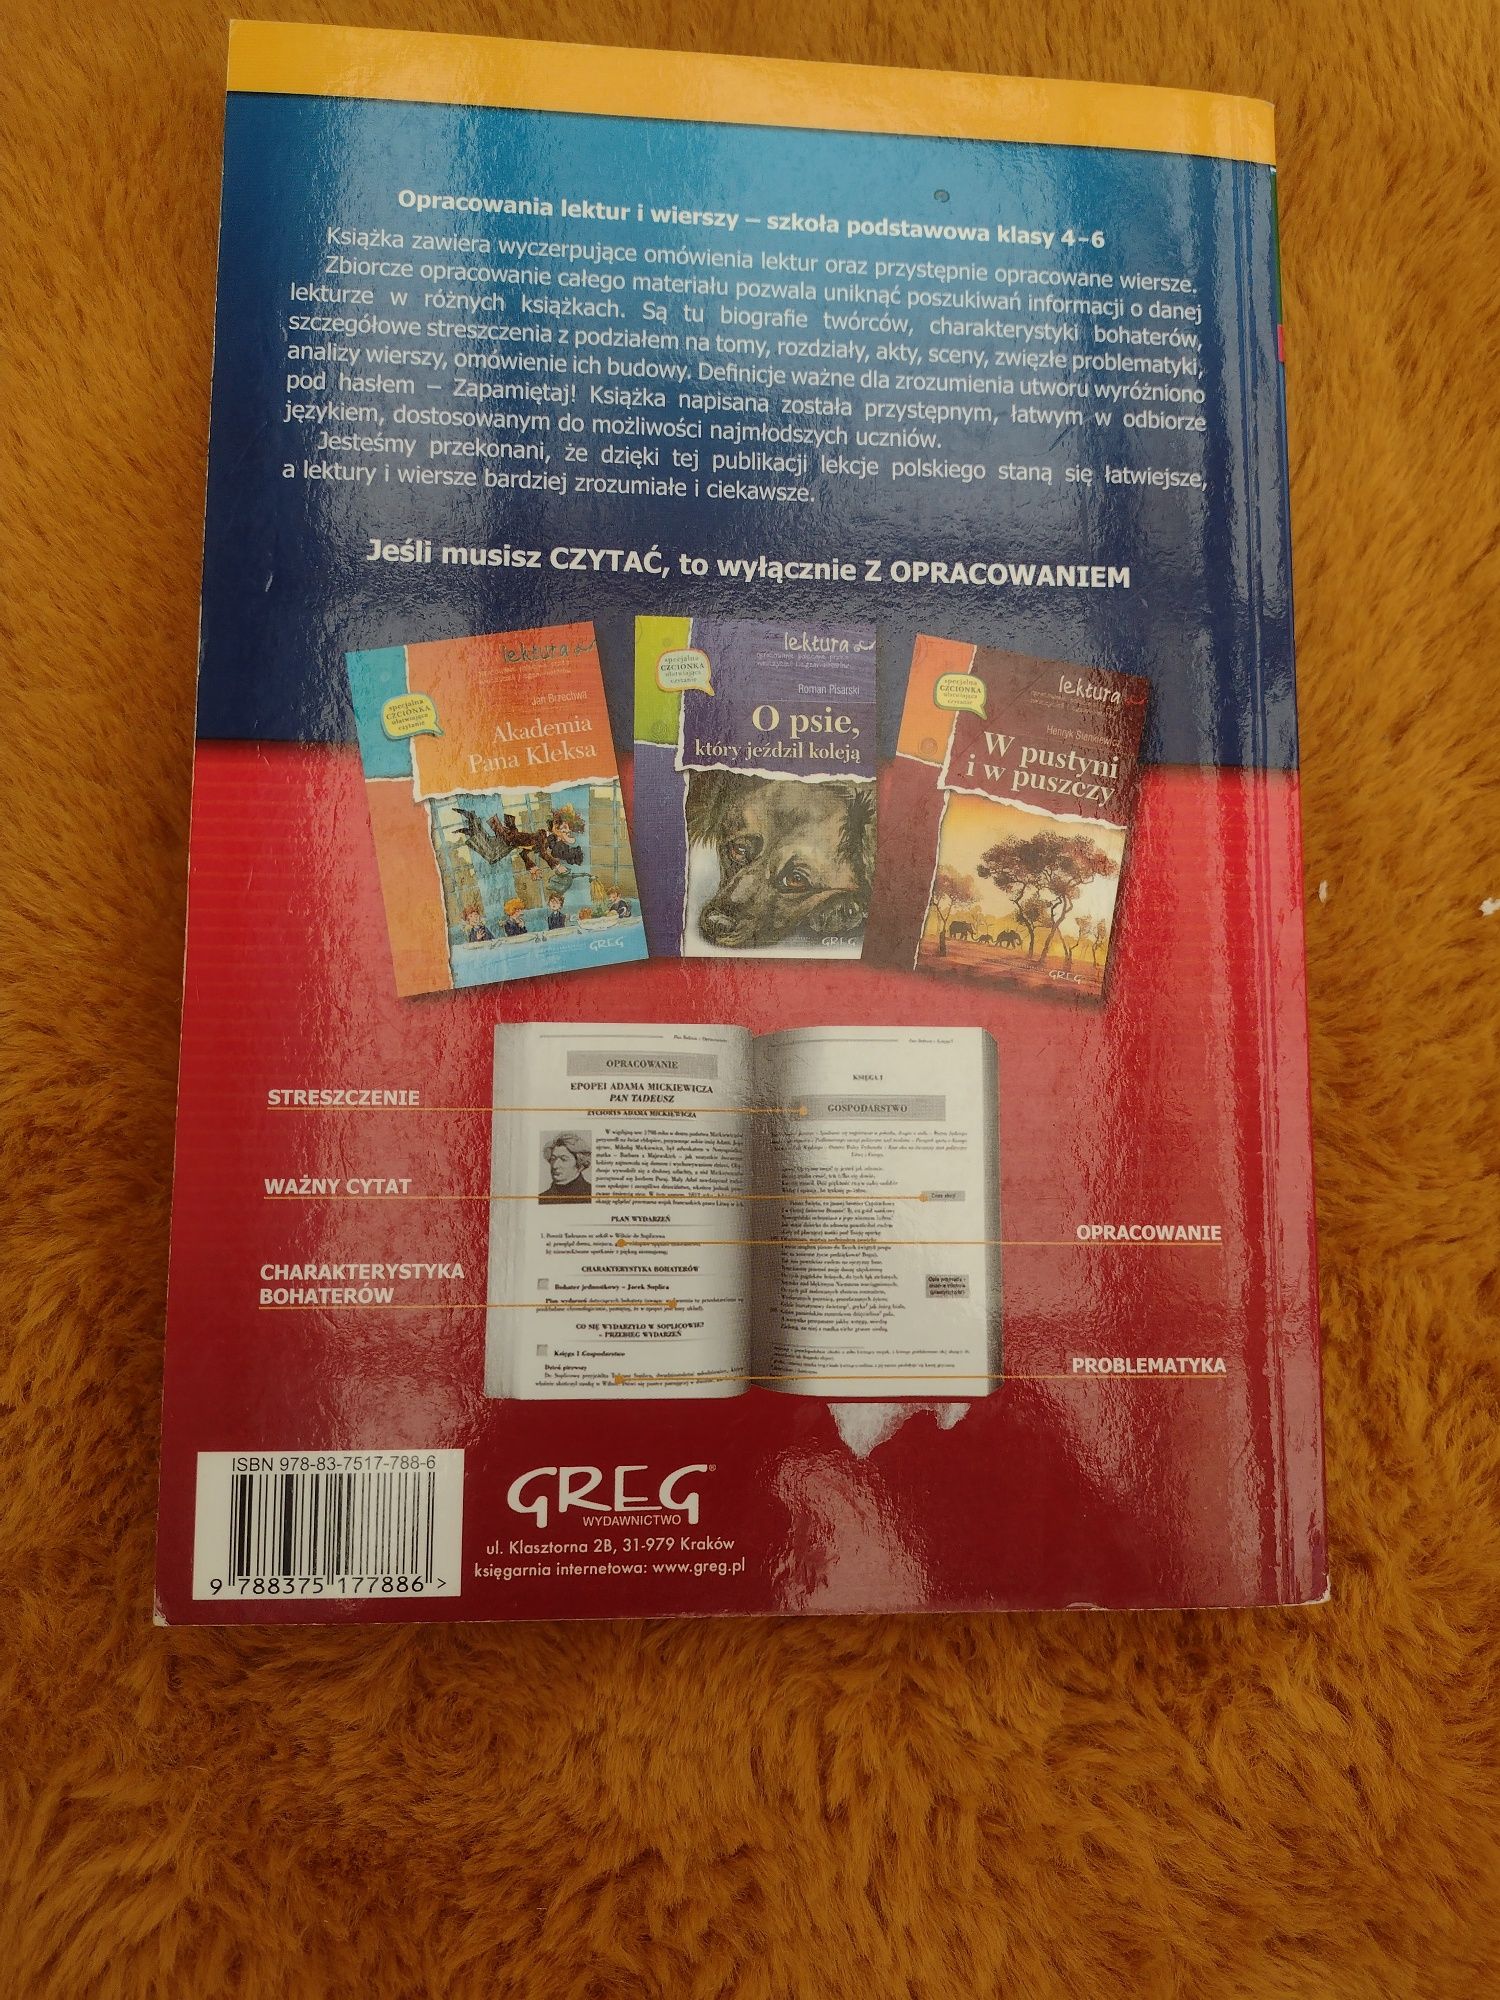 Książka opracowania lektur szkolnych (klasa 4-6)  wydawnictwo GREG